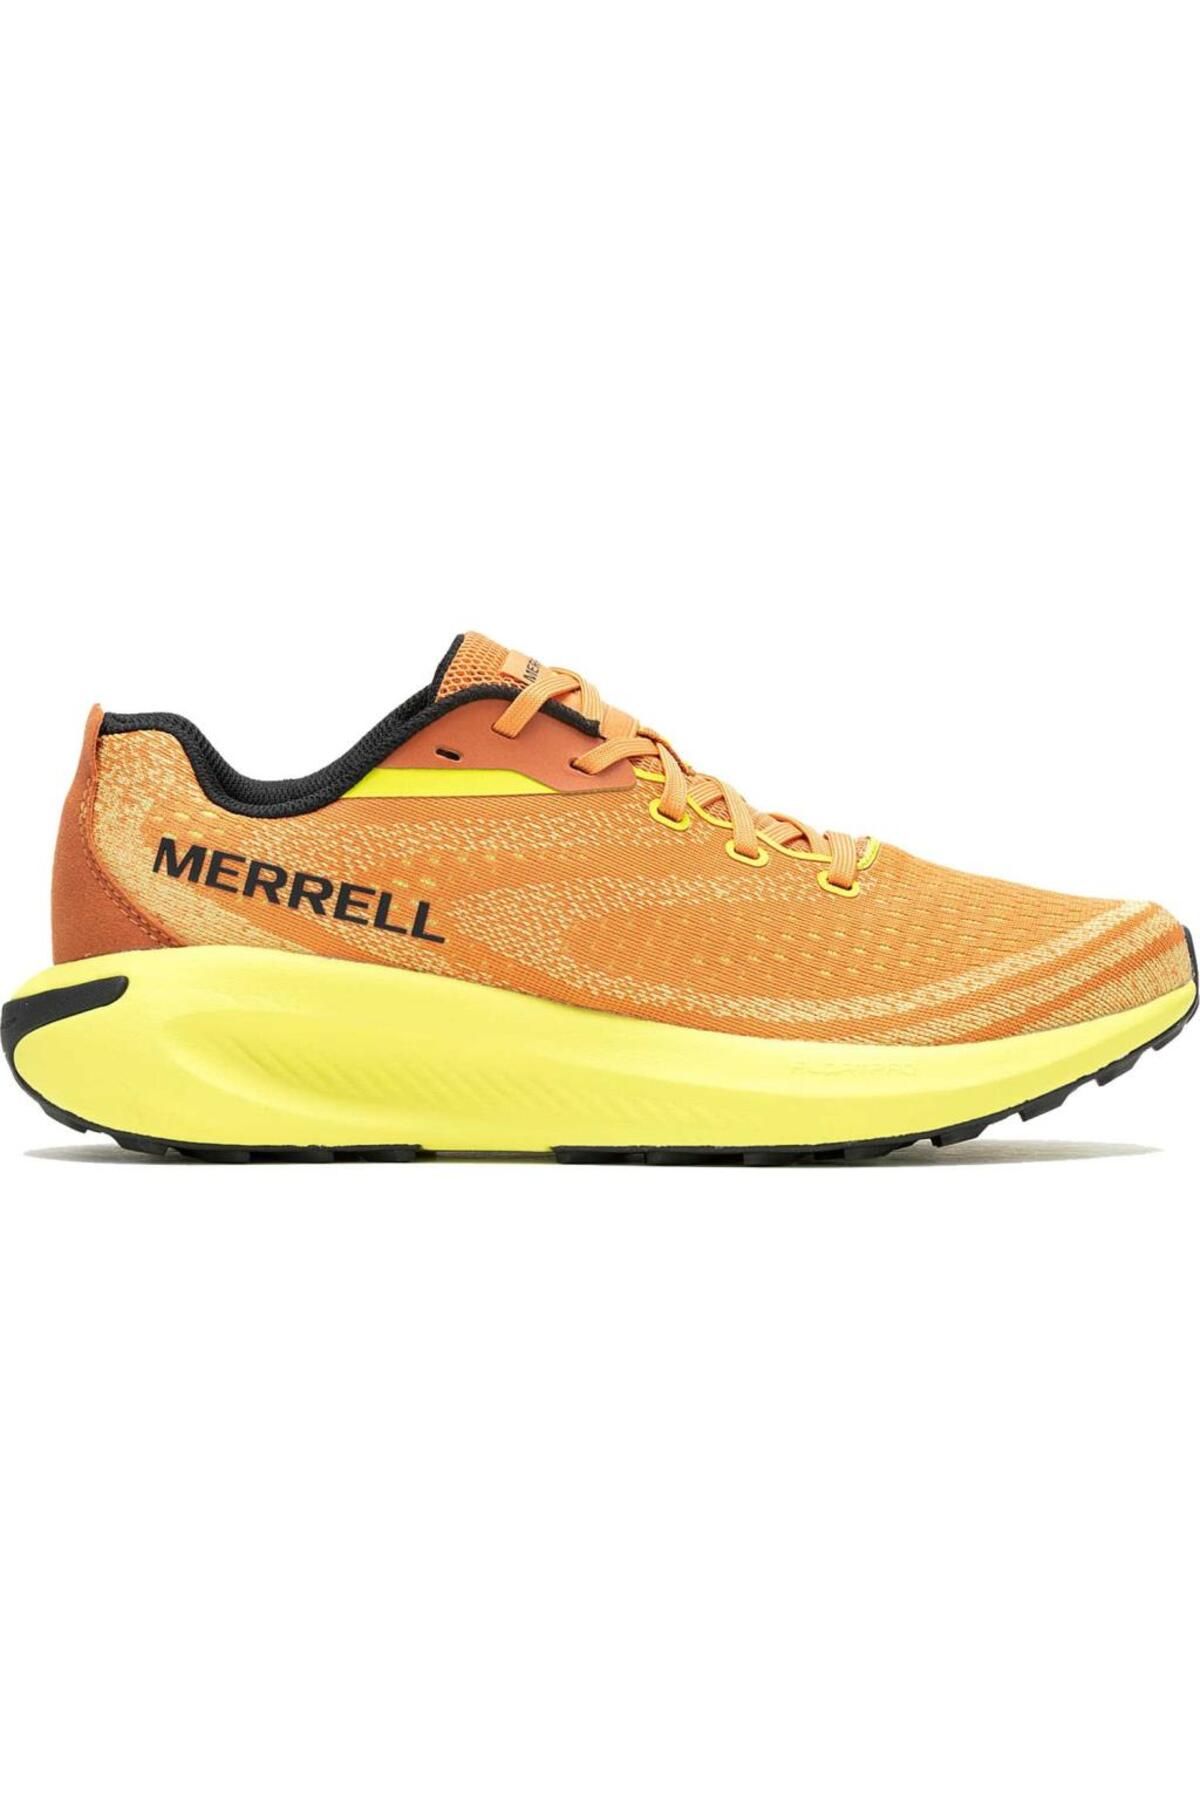 Merrell Morphlite Erkek Ayakkabı